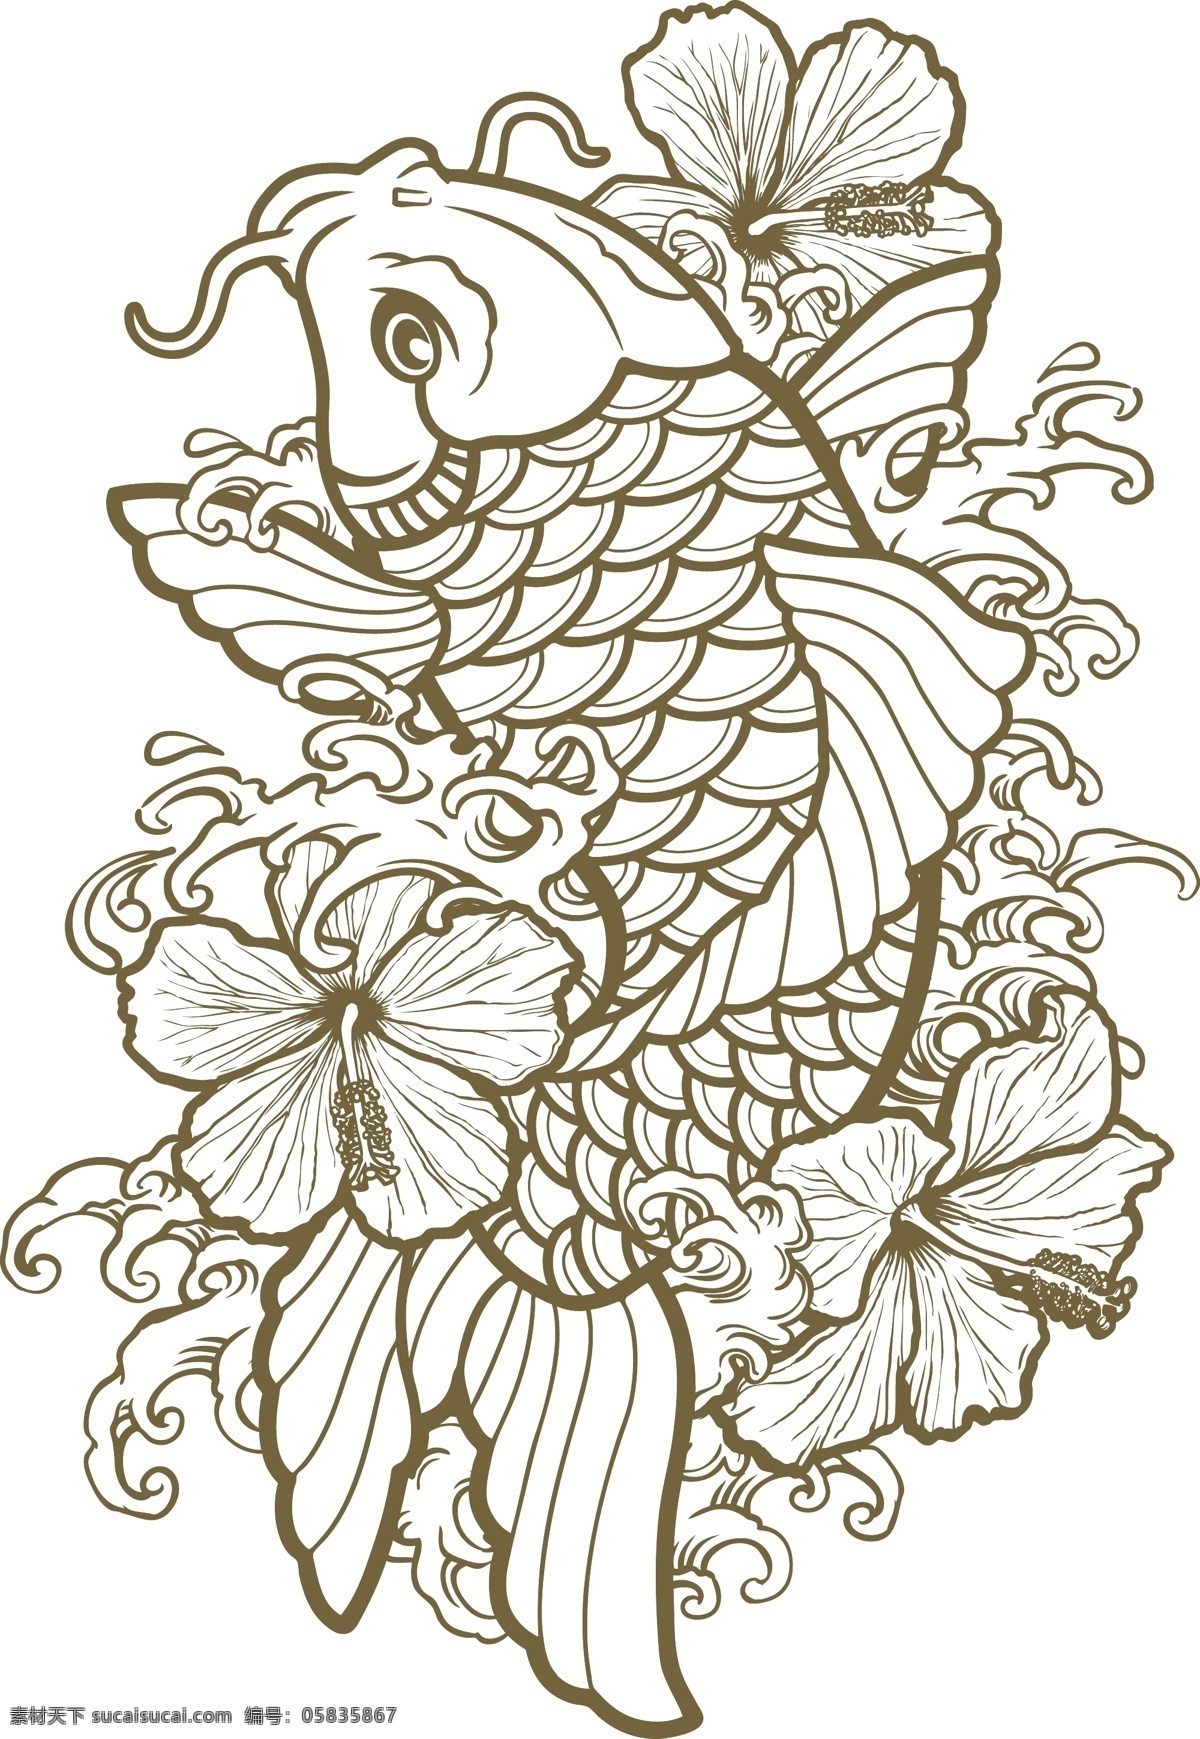 矢量 金鱼 花纹 背景 花朵 鲜花 动物 矢量鱼 矢量花纹 图案 纹身 底纹 矢量素材 印花图案 底纹边框 白色